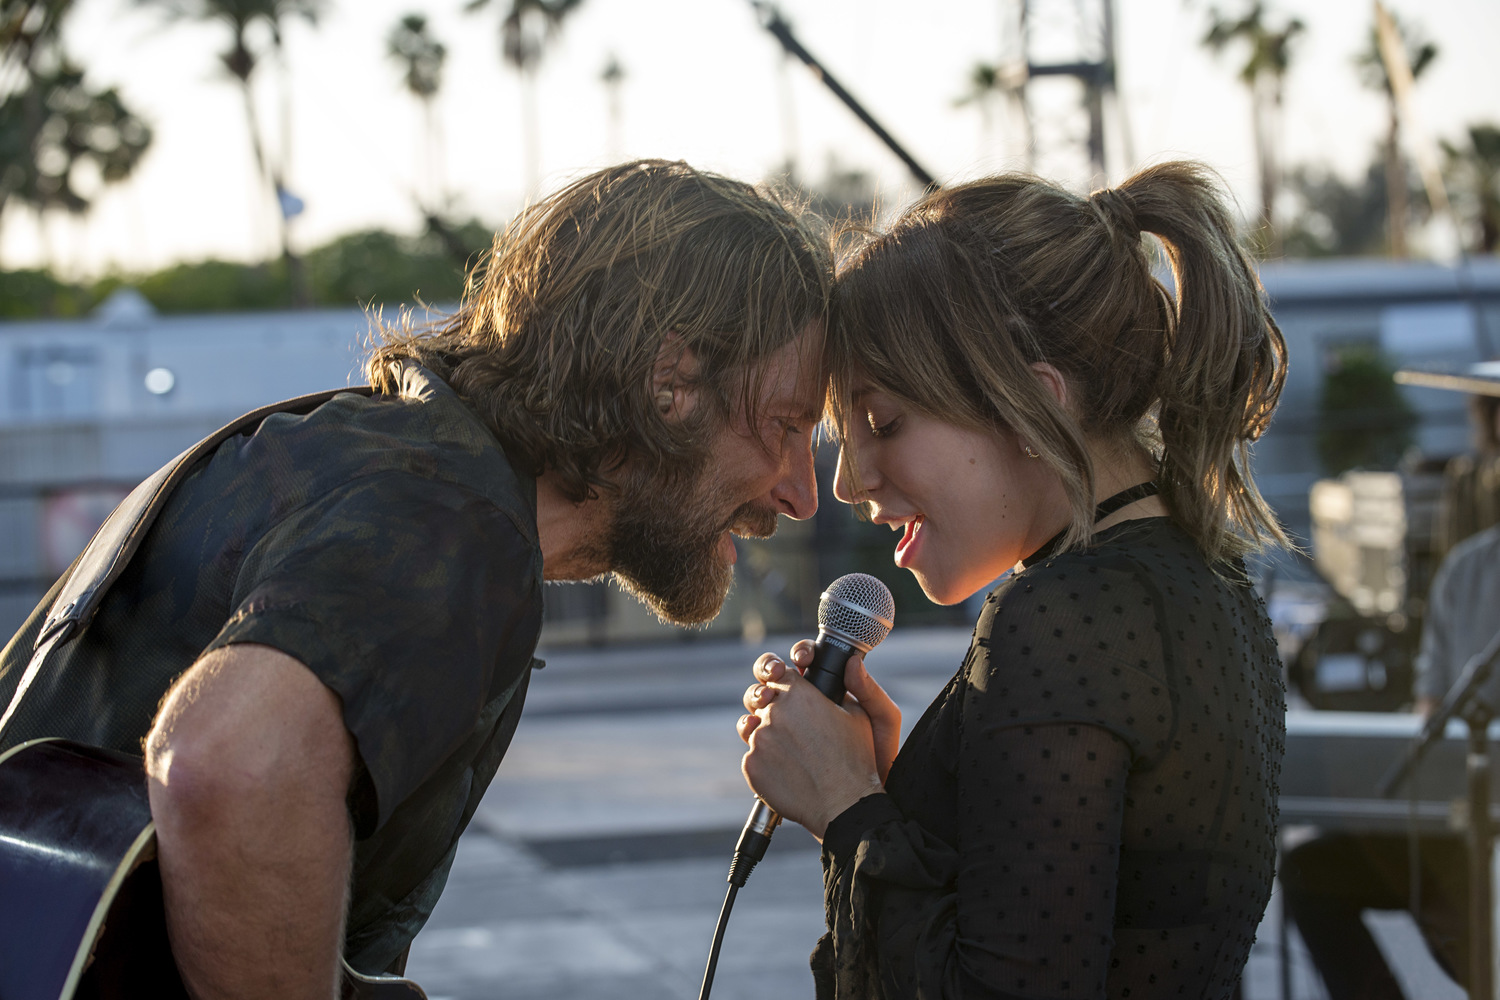 Les personnages incarnés par Lady Gaga et Bradley Cooper chantent en duo sur scène. Image issue du film "A star is born" réalisé par Bradley Cooper.